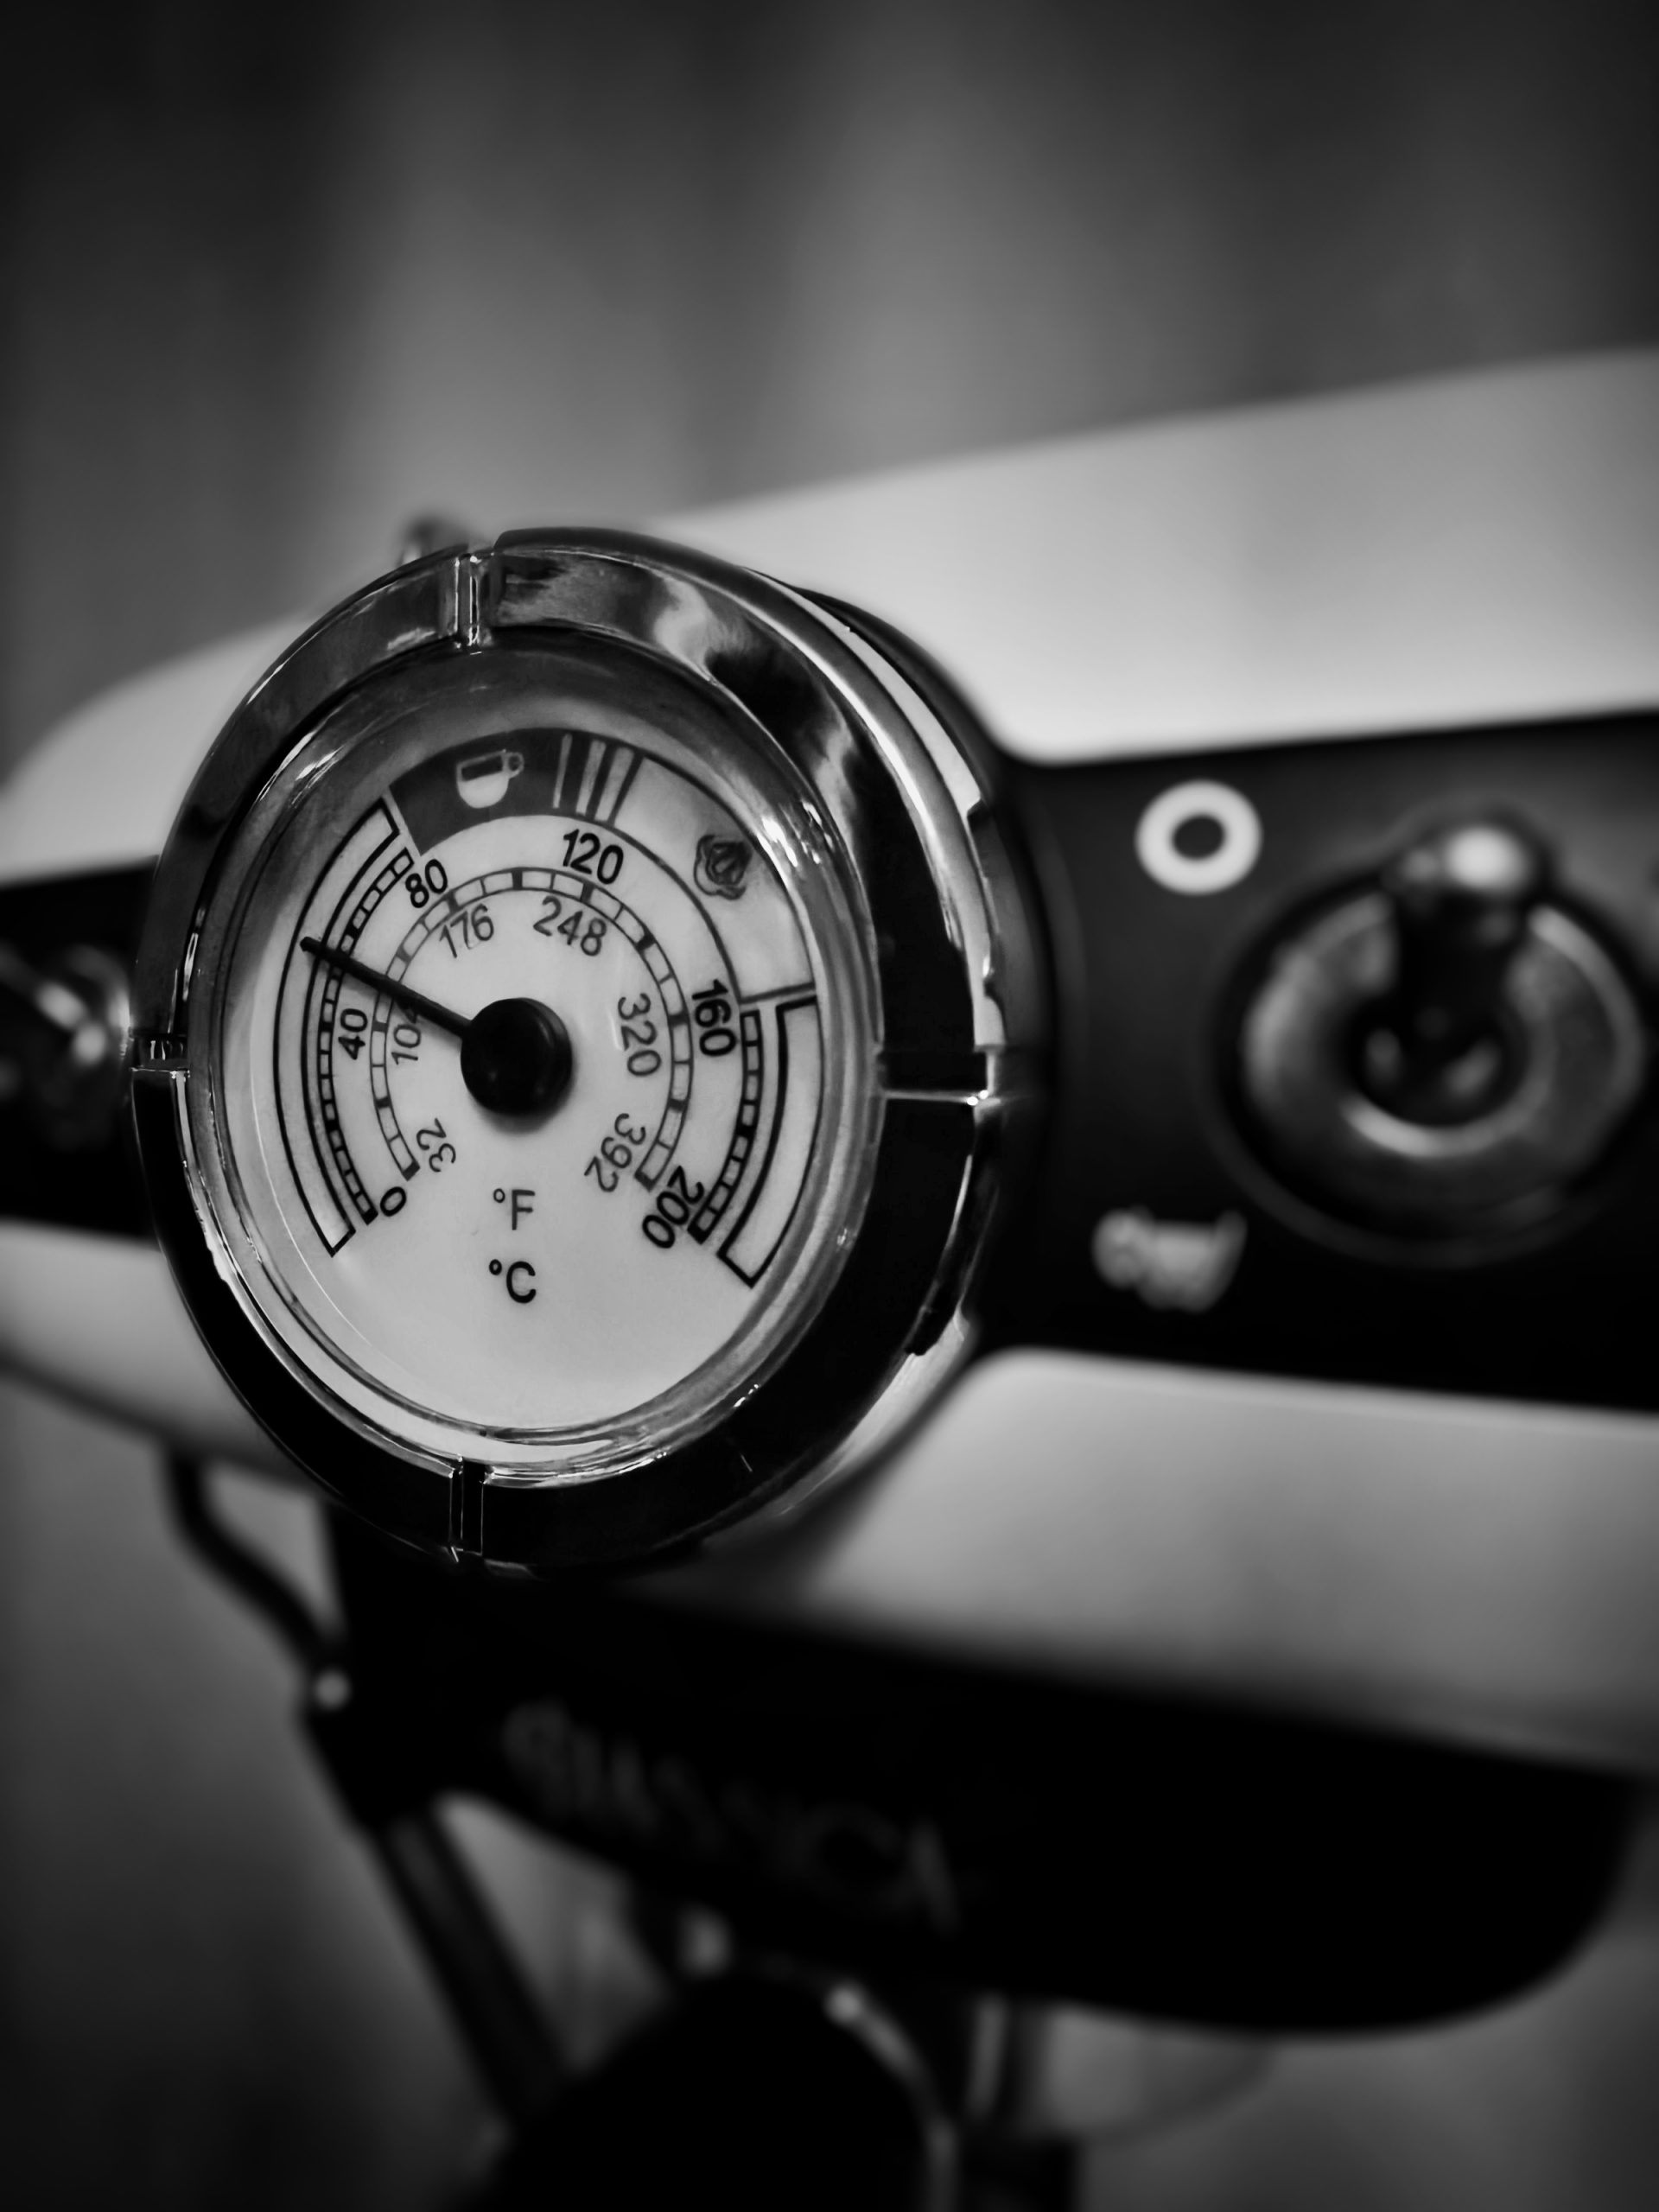 Espresso Machine Temperature Meter